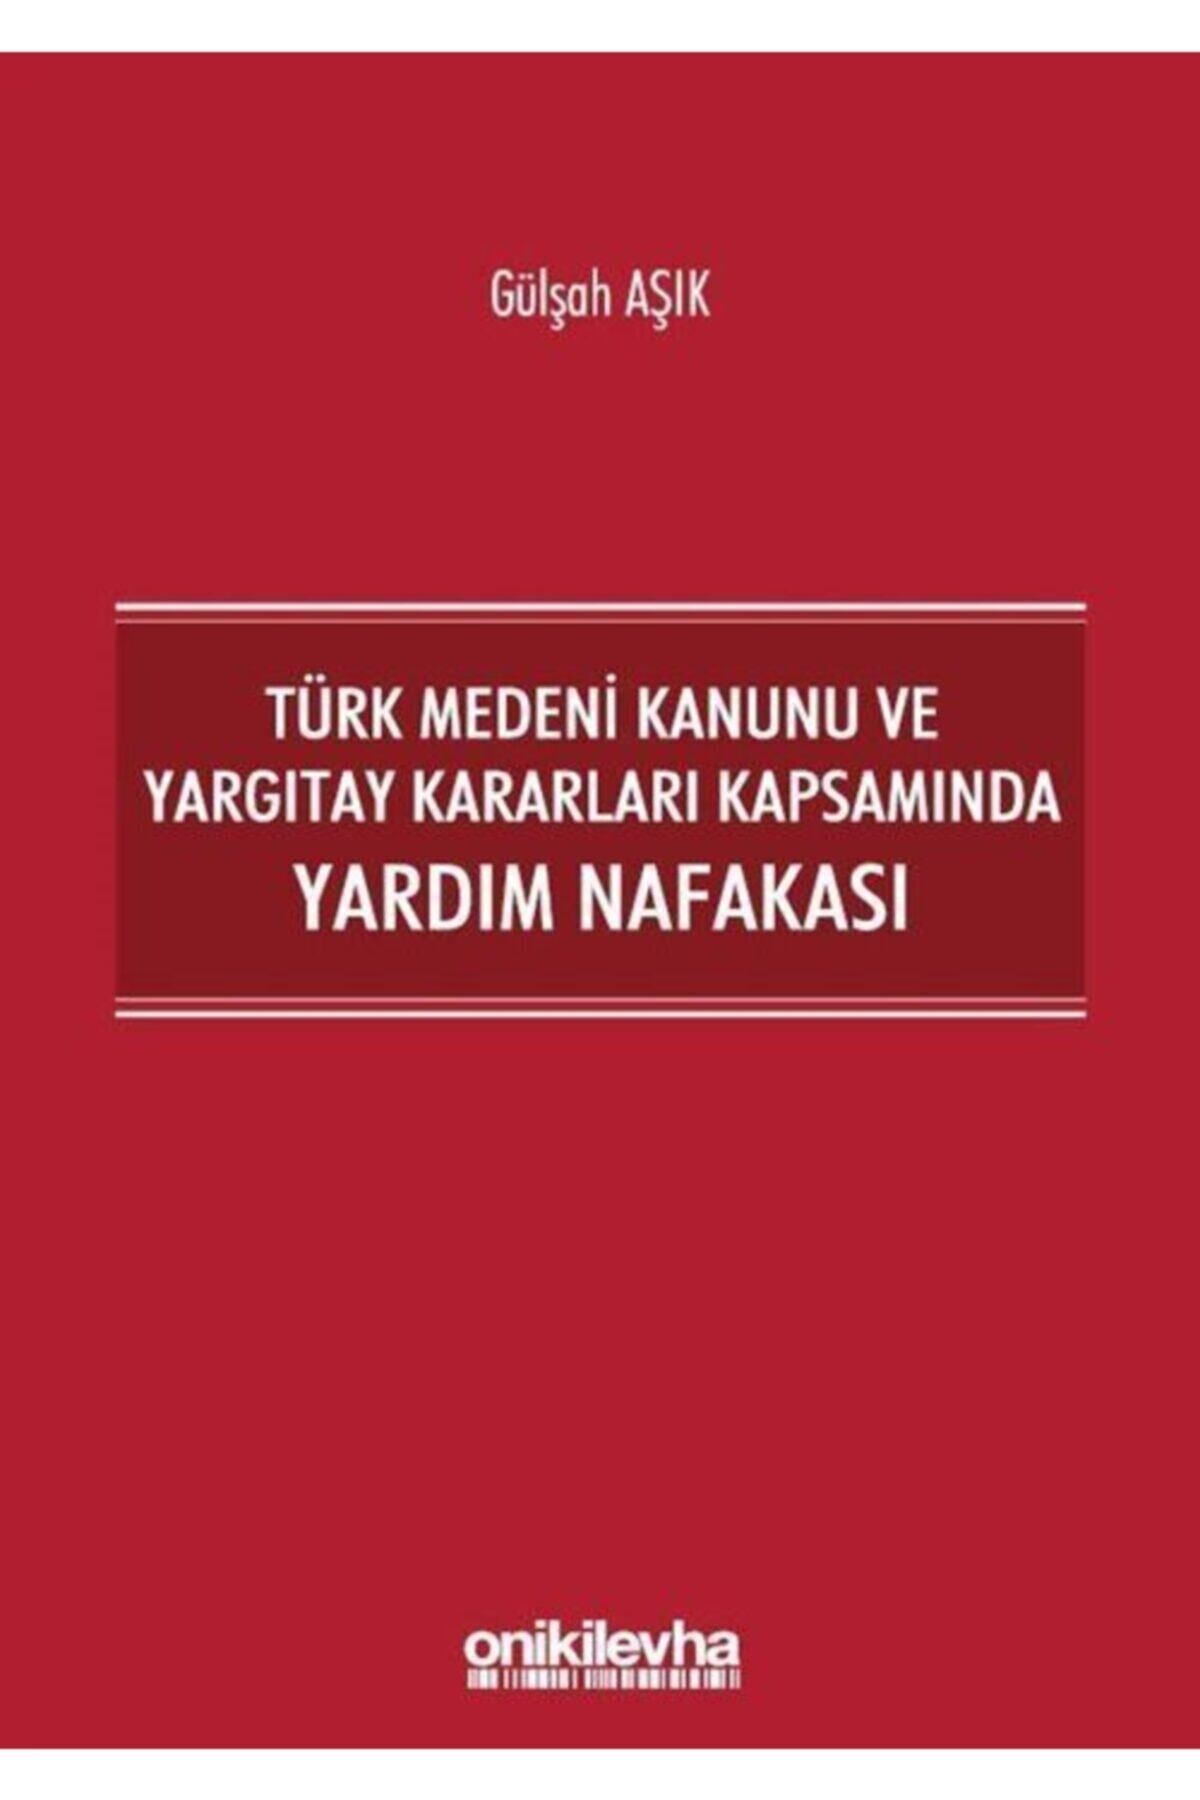 On İki Levha Yayıncılık Türk Medeni Kanunu Ve Yargıtay Kararları Kapsamında Yardım Nafakası